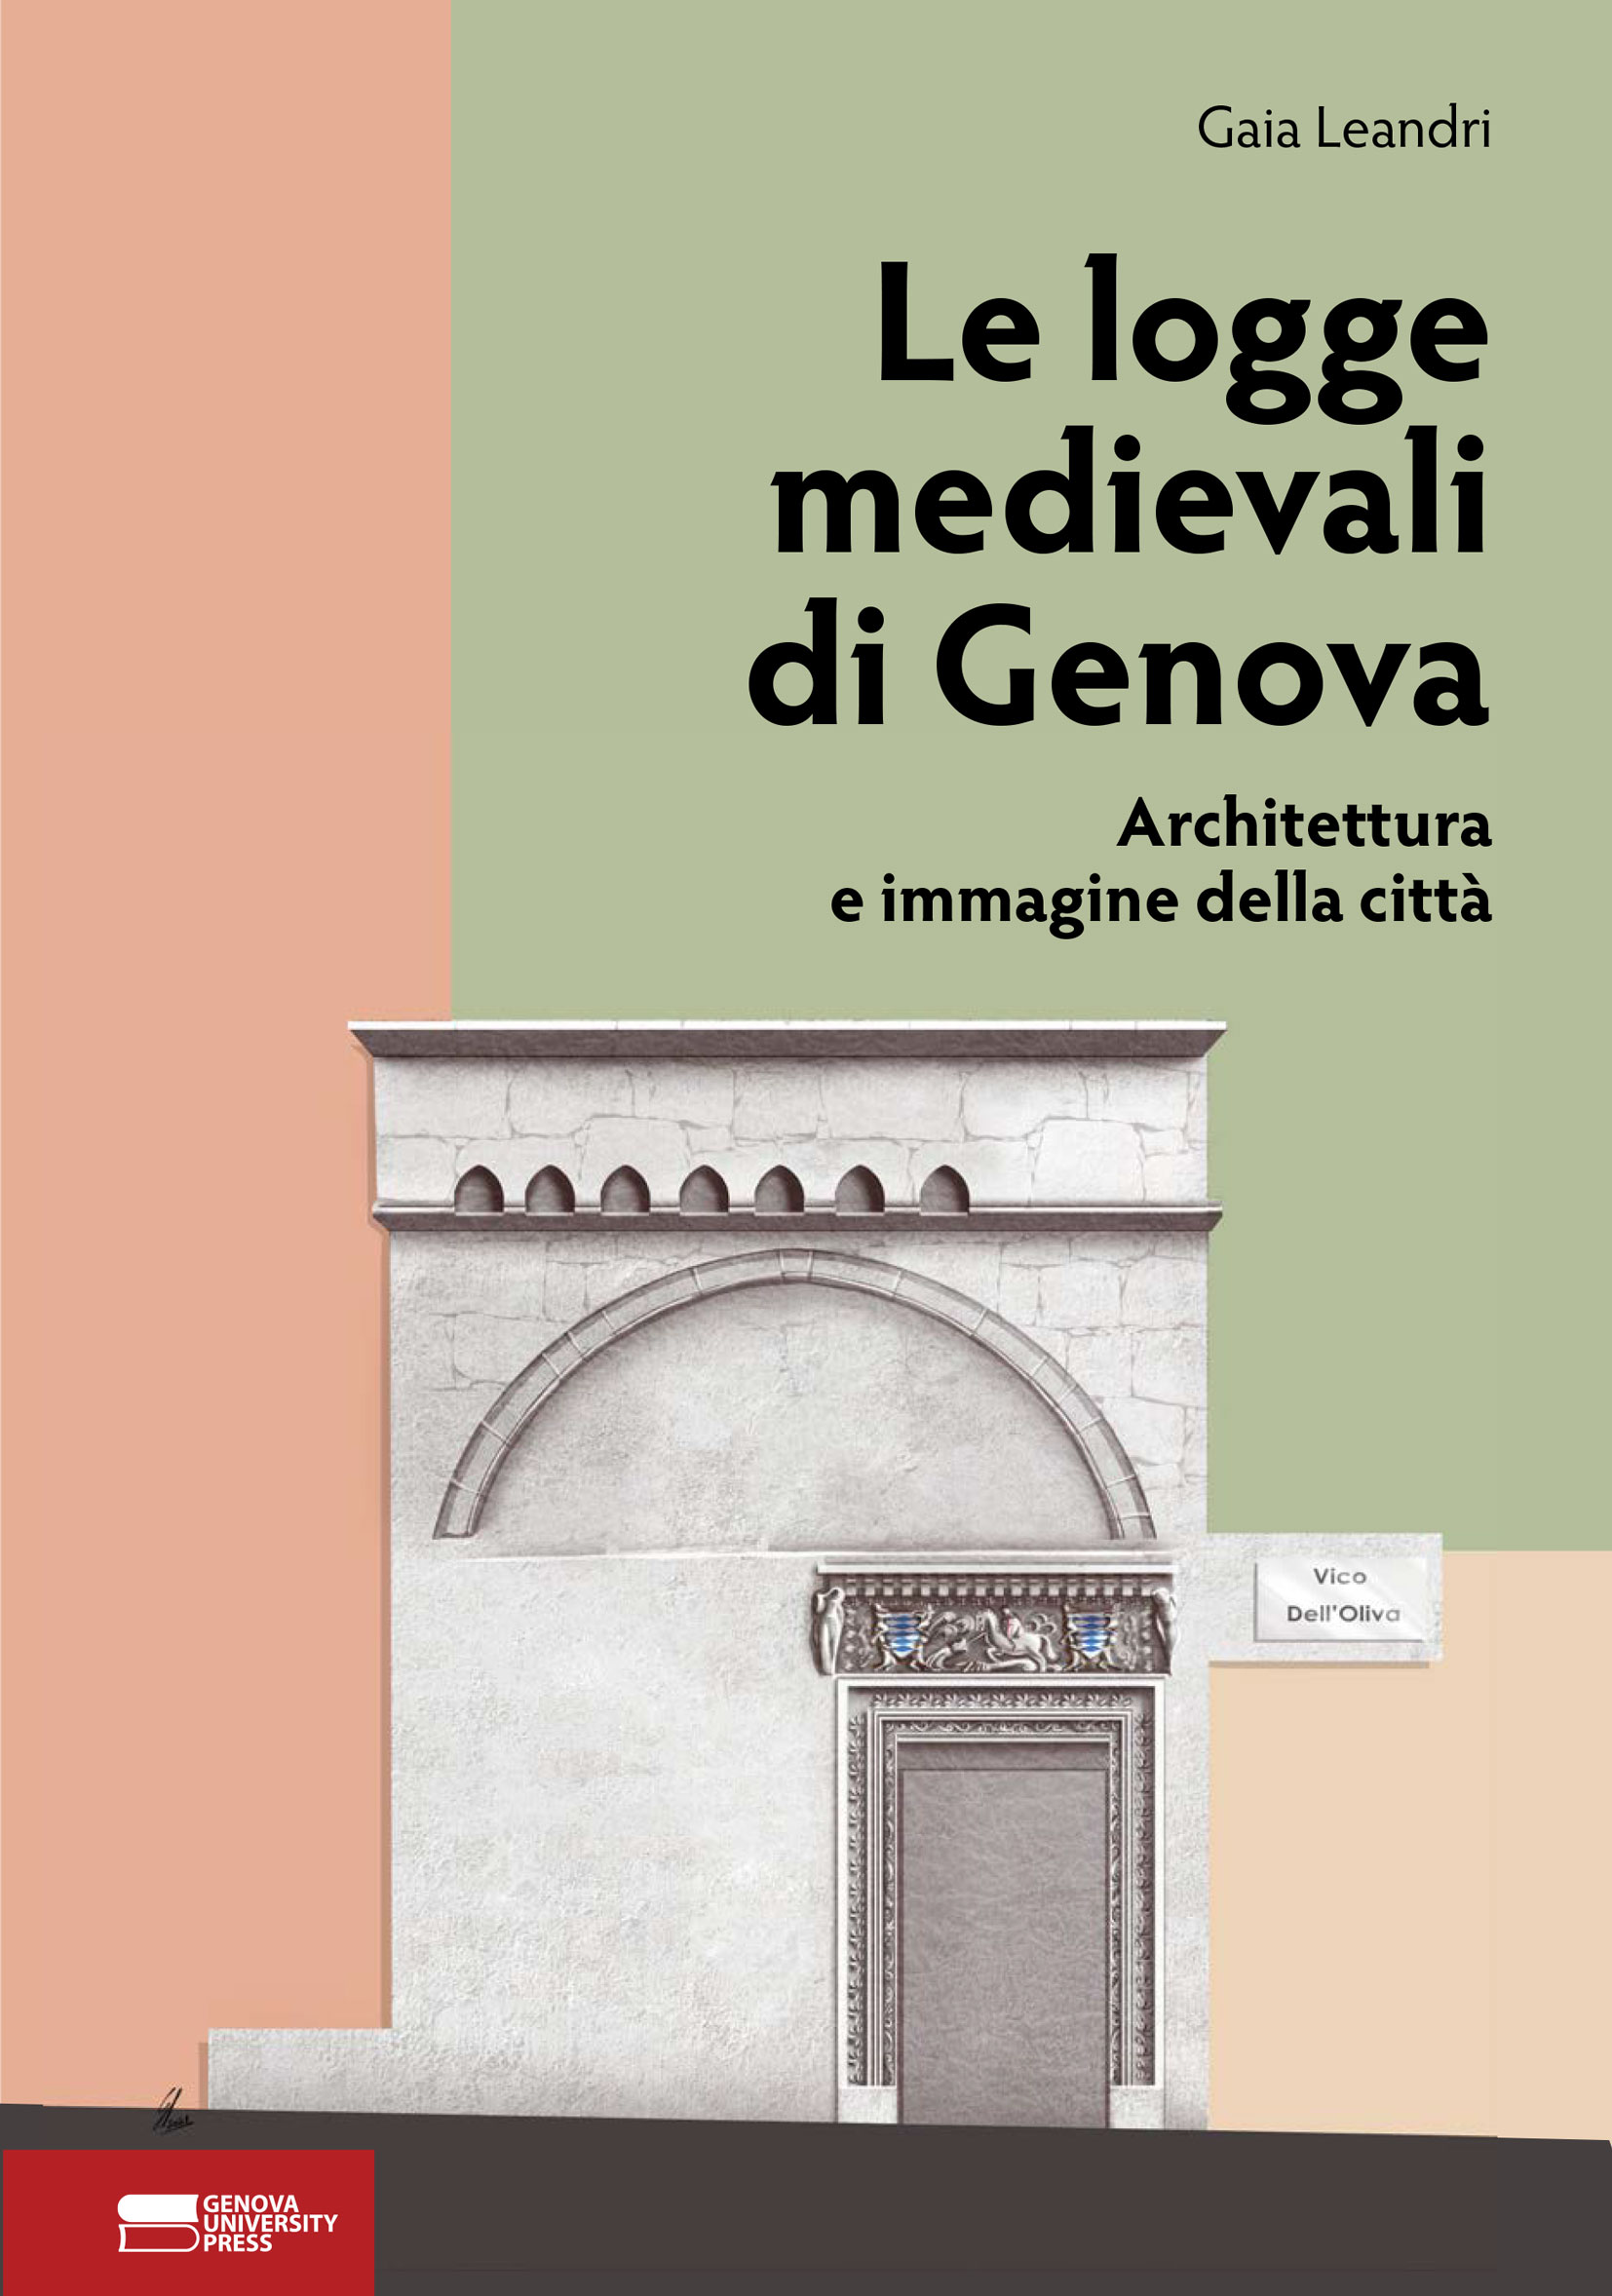 Le logge medievali di Genova